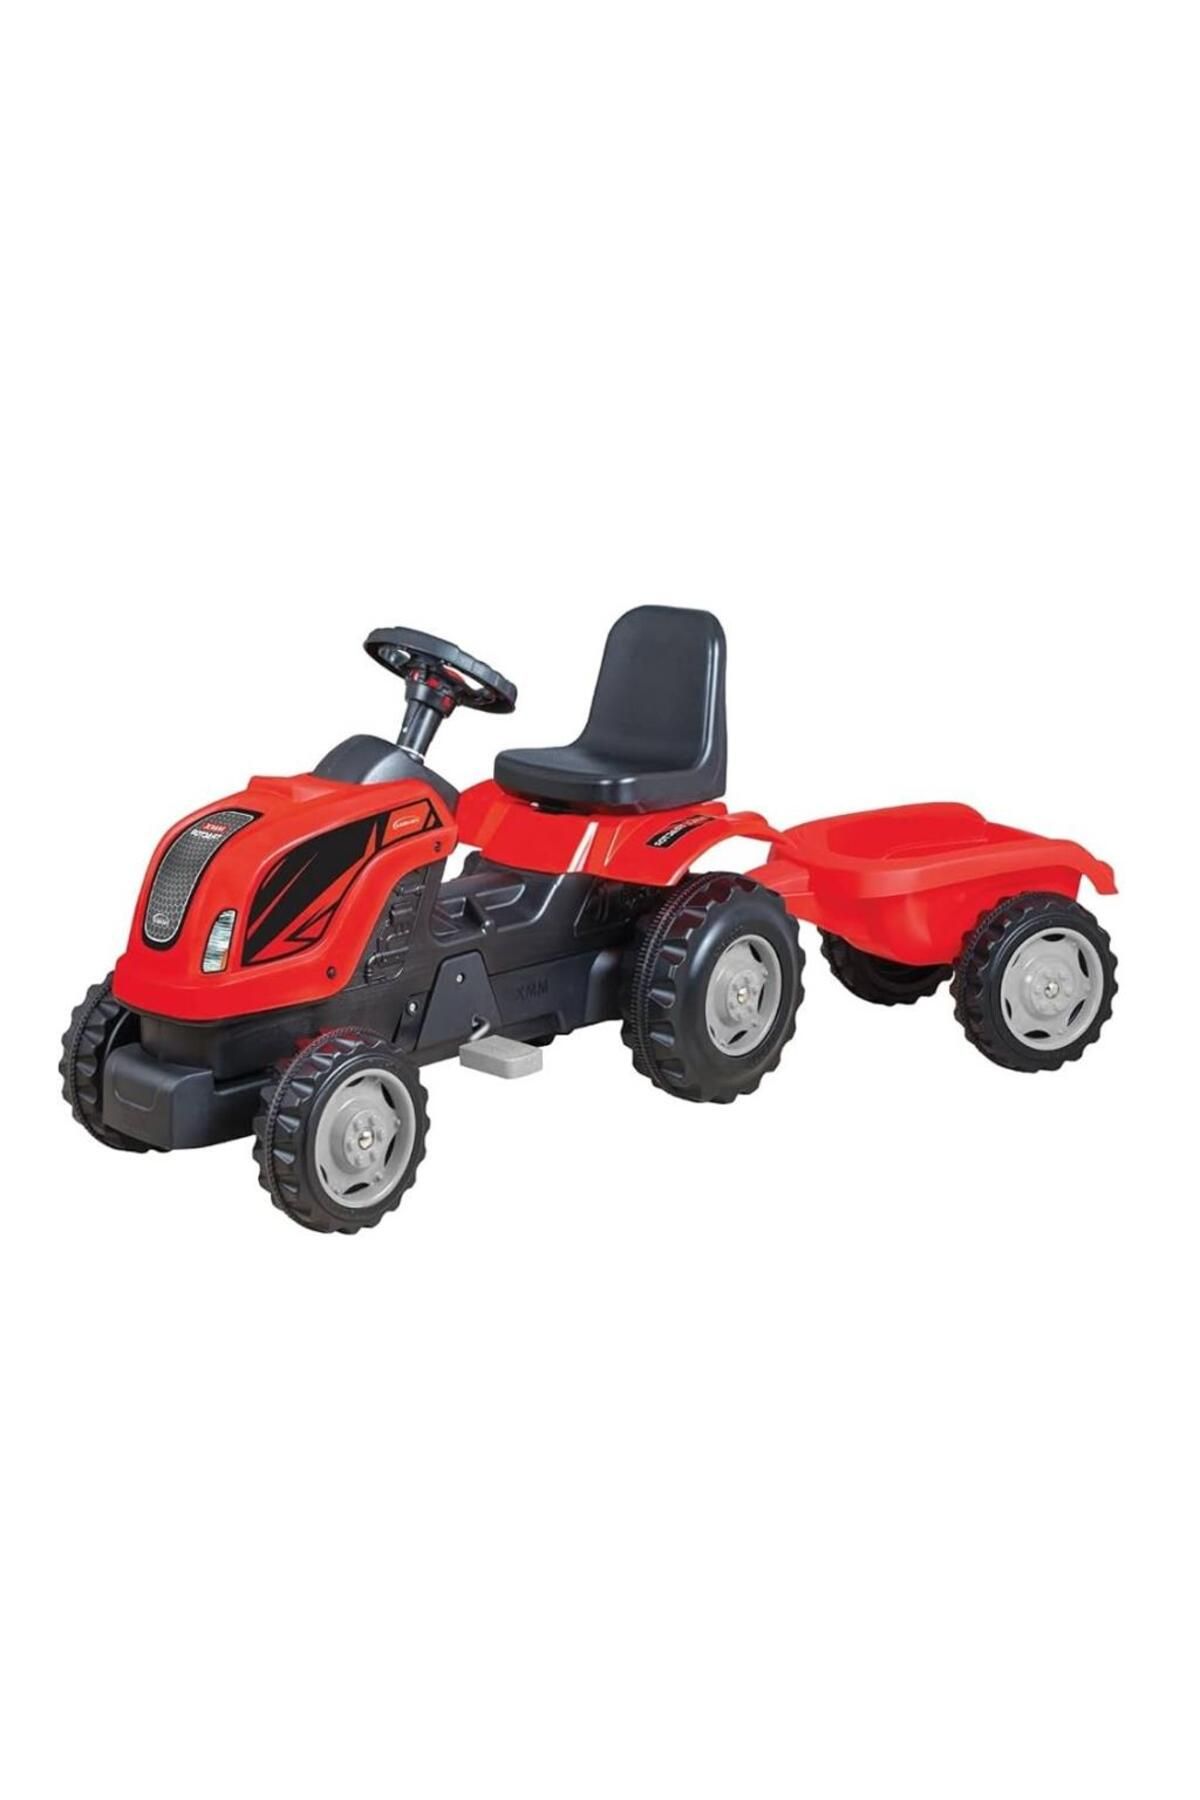 Micromax Römorklu Traktör Pedallı (kırmızı)